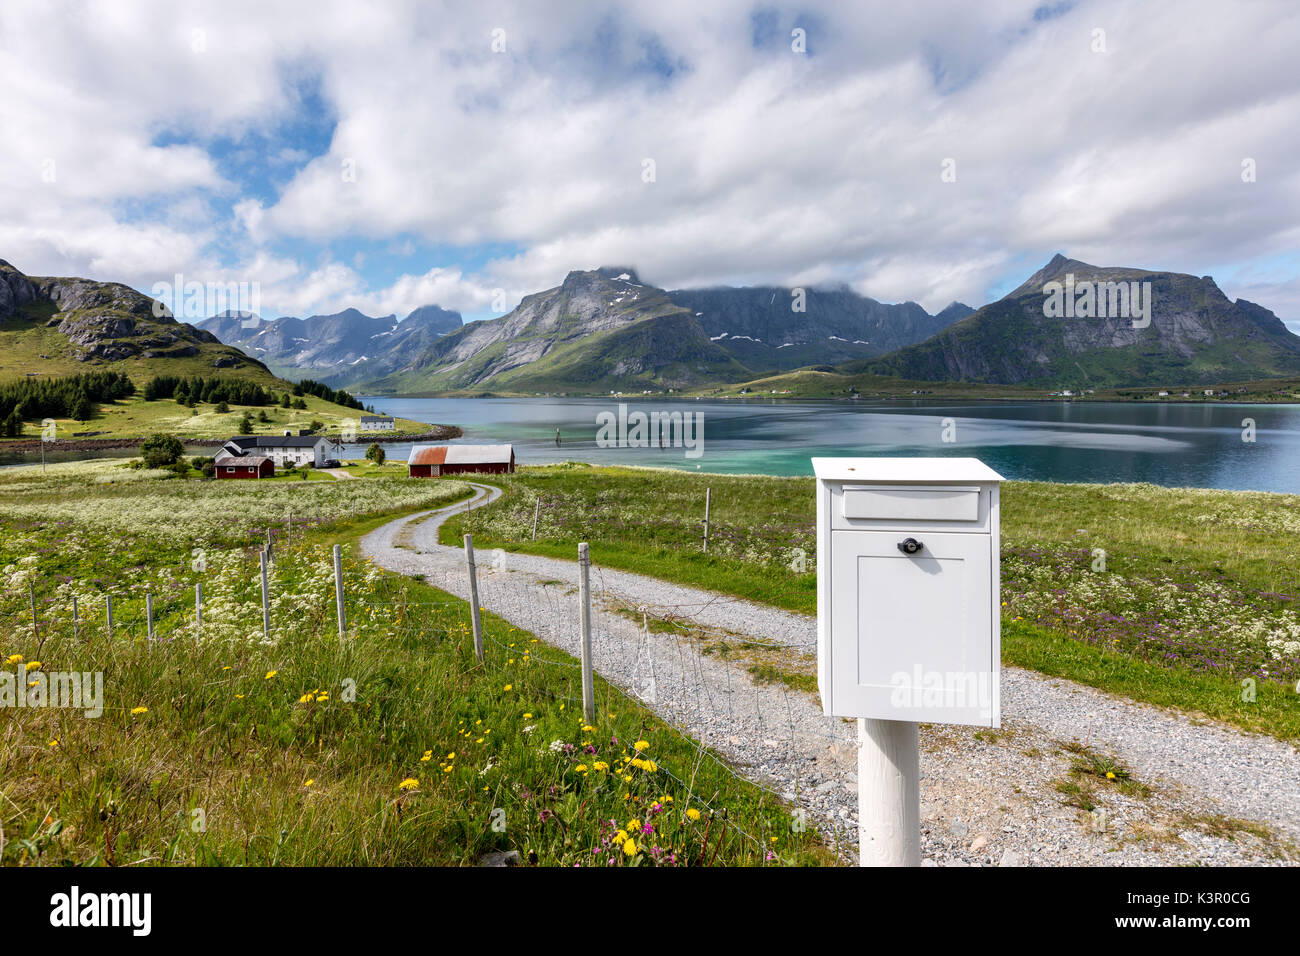 Floraison d'été encadrée par l'eau claire Fredvang Flakstad Municipalité du comté de Nordland en Norvège Europe du Nord îles Lofoten Banque D'Images